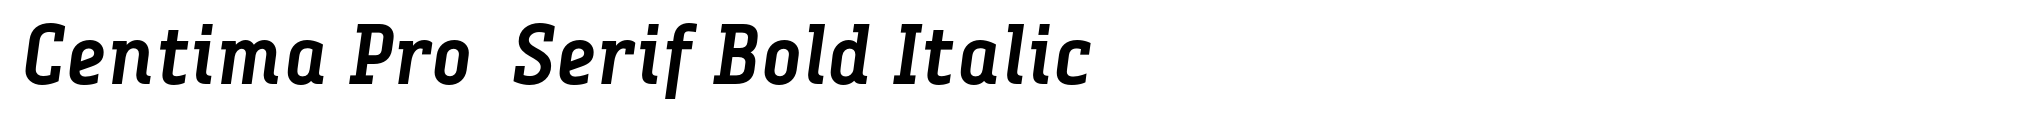 Centima Pro  Serif Bold Italic image